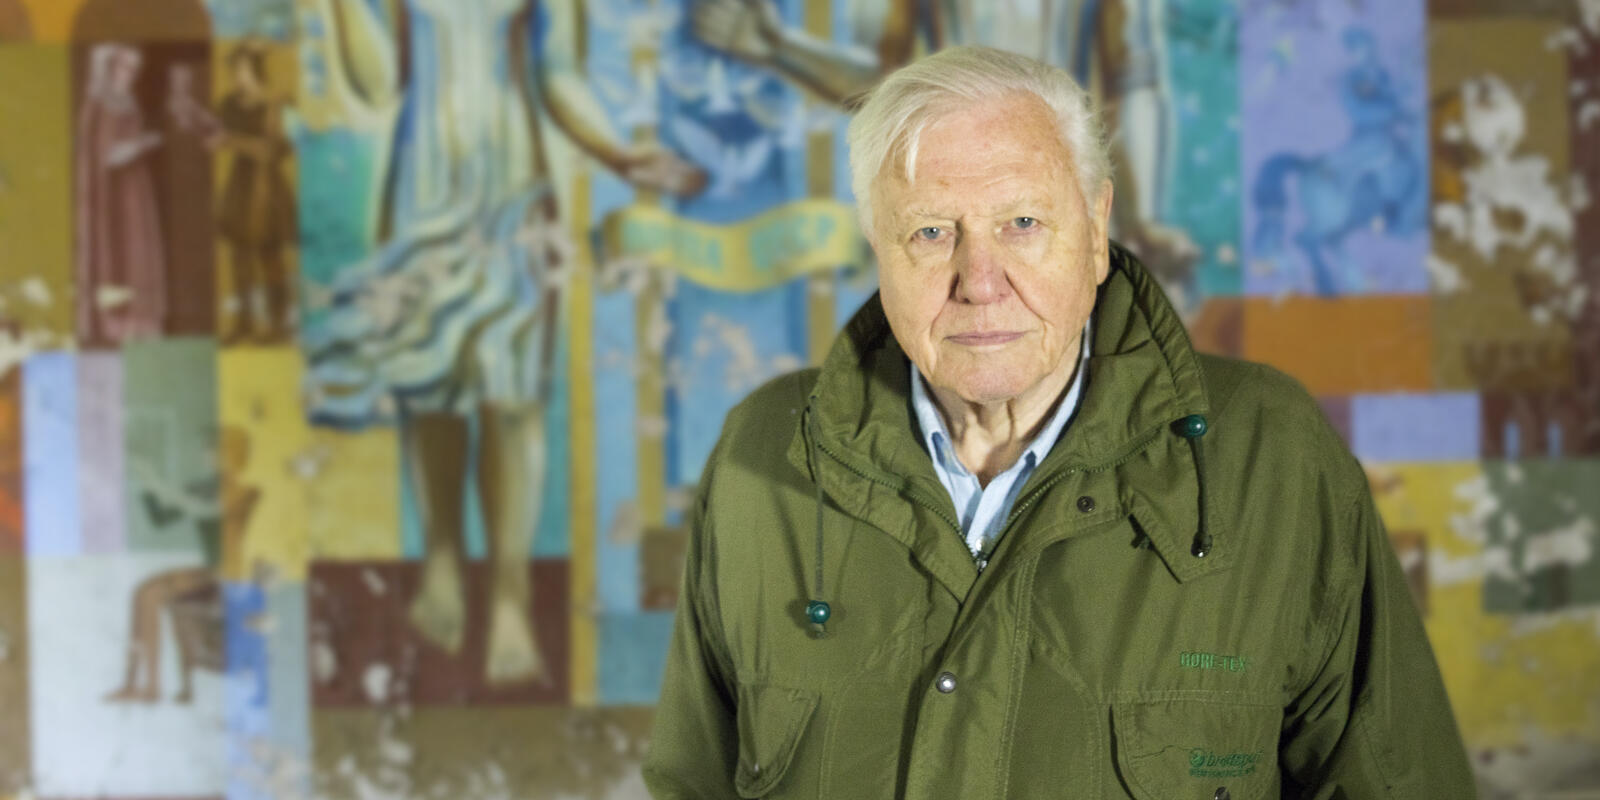 Sir David Attenborough at Chernobyl